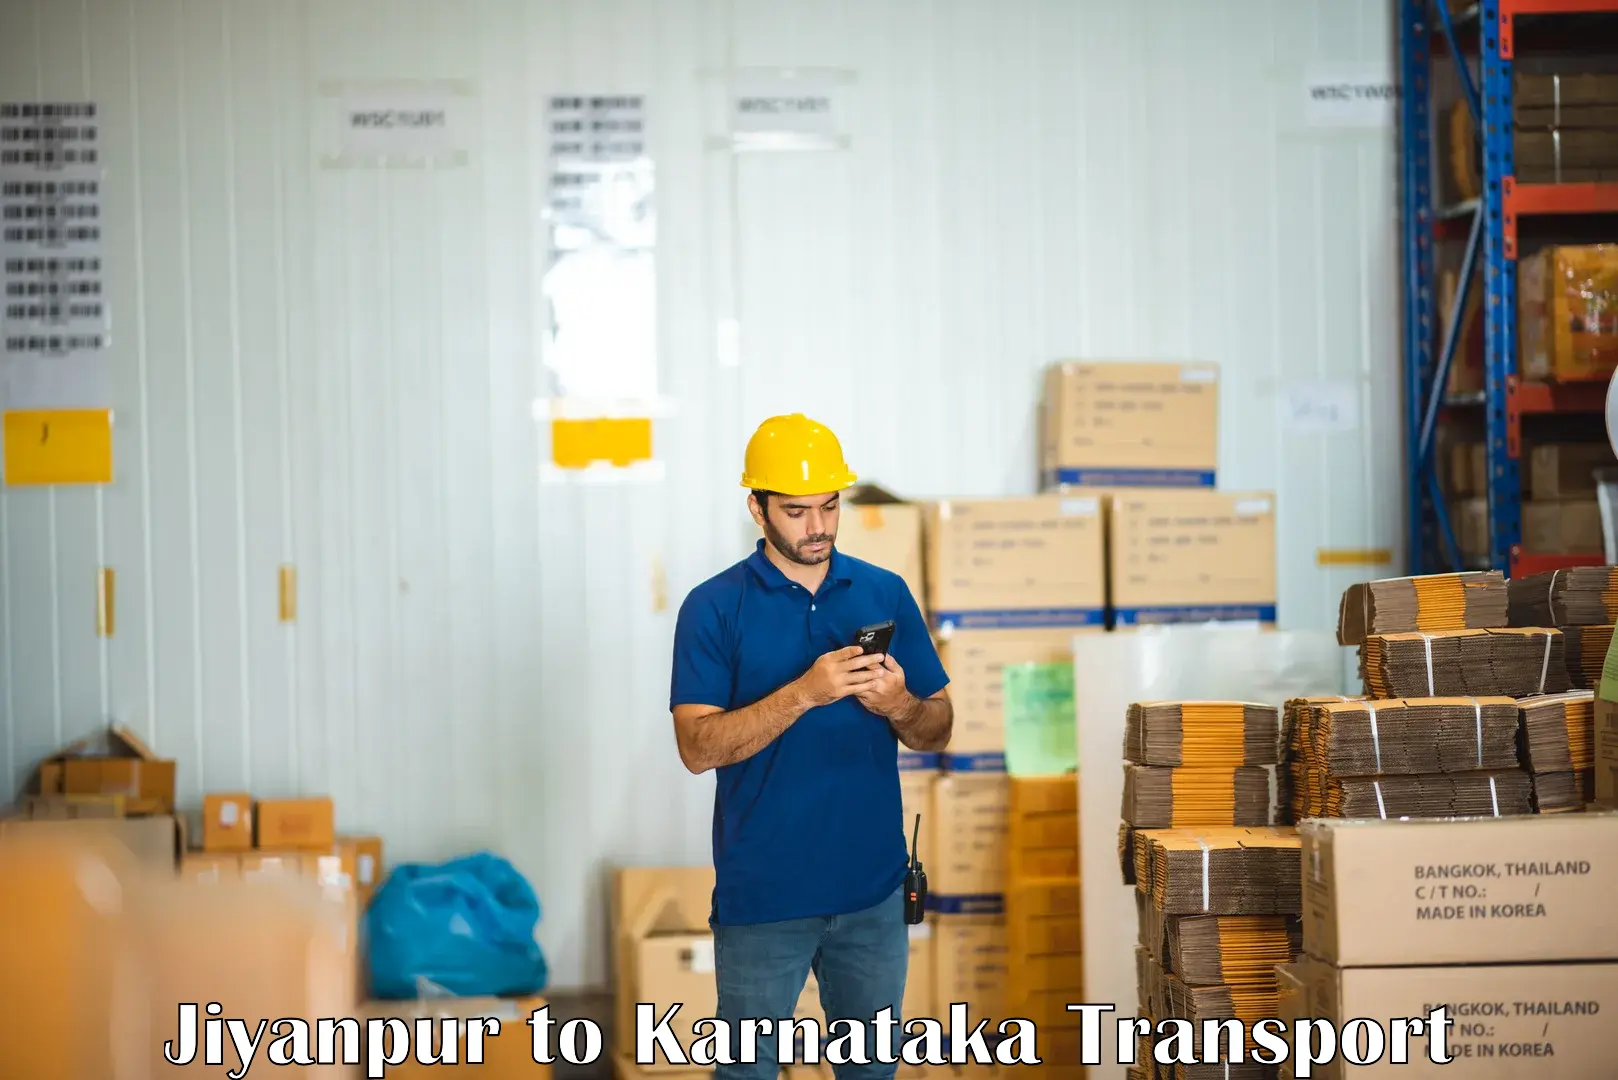 Transport in sharing Jiyanpur to Karnataka